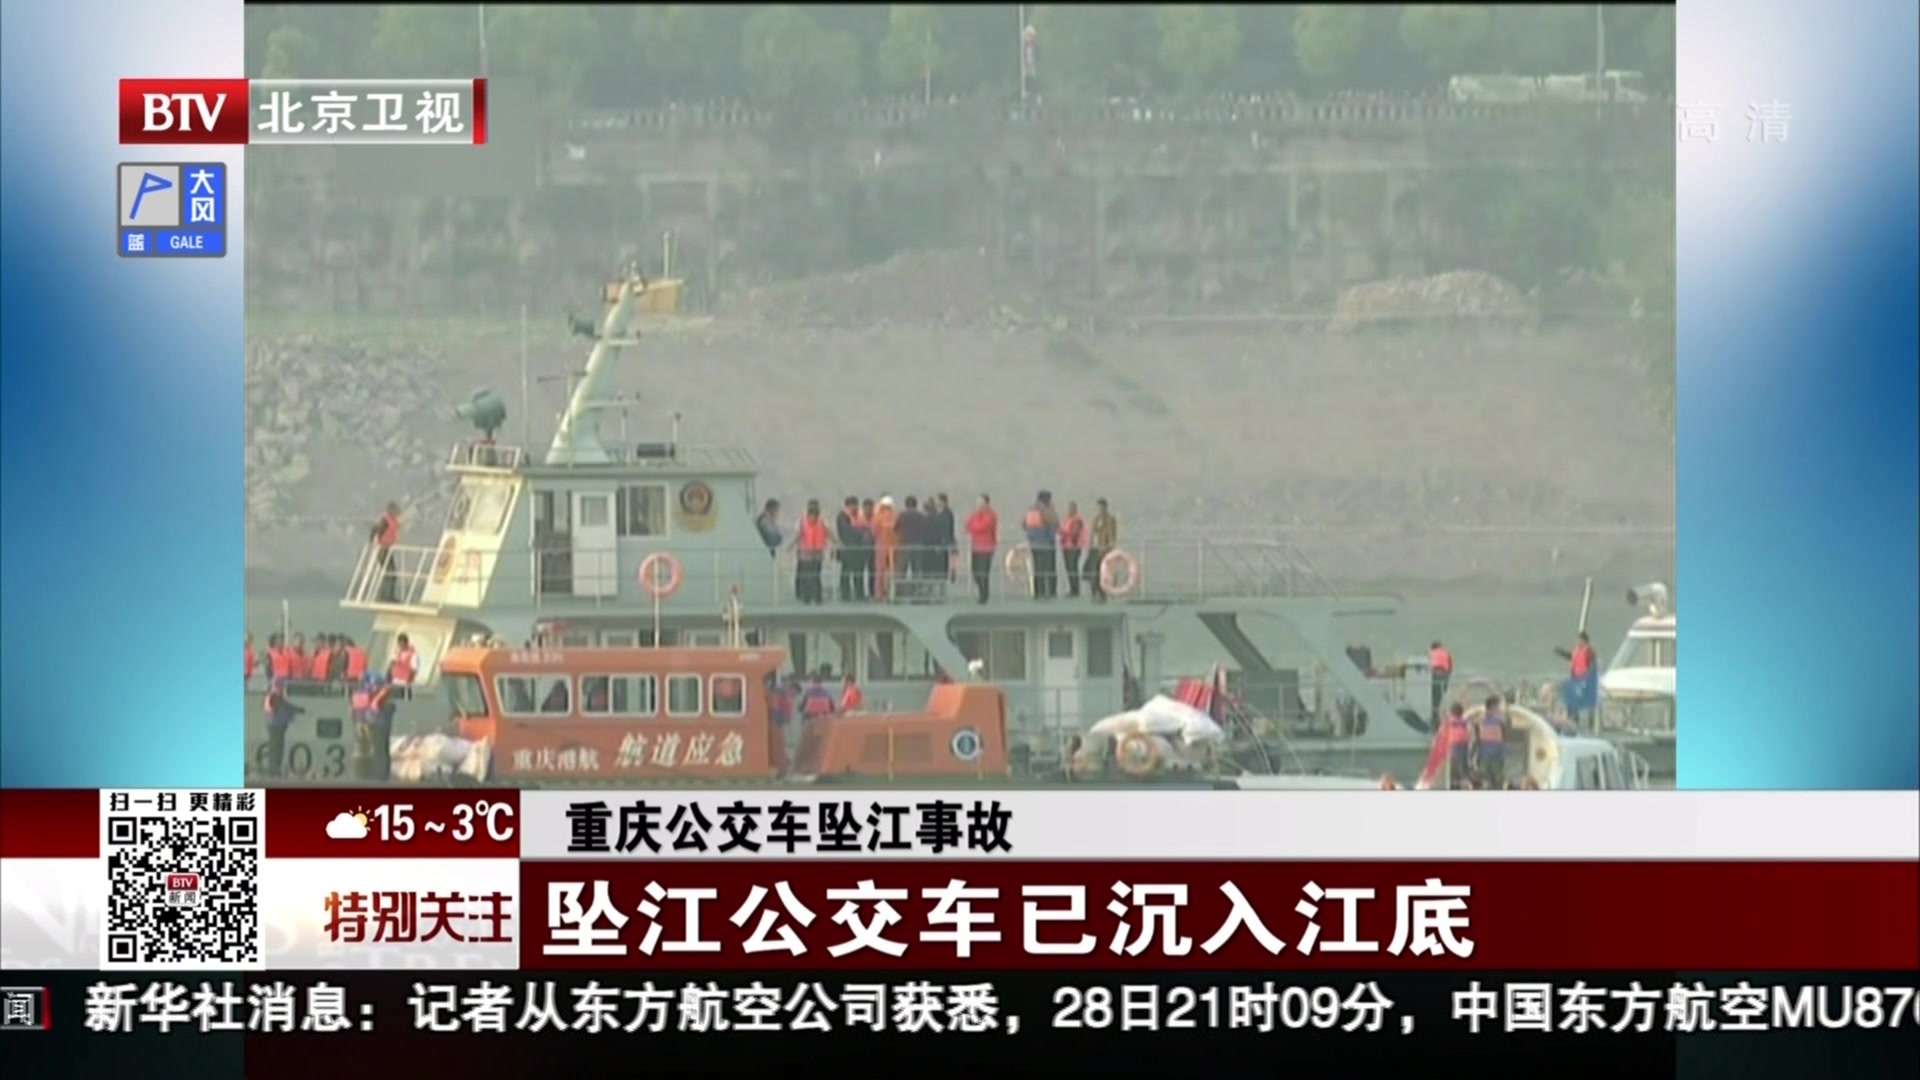 公交车坠江事故:重庆万州公交客车坠江事故救援工作继续进行